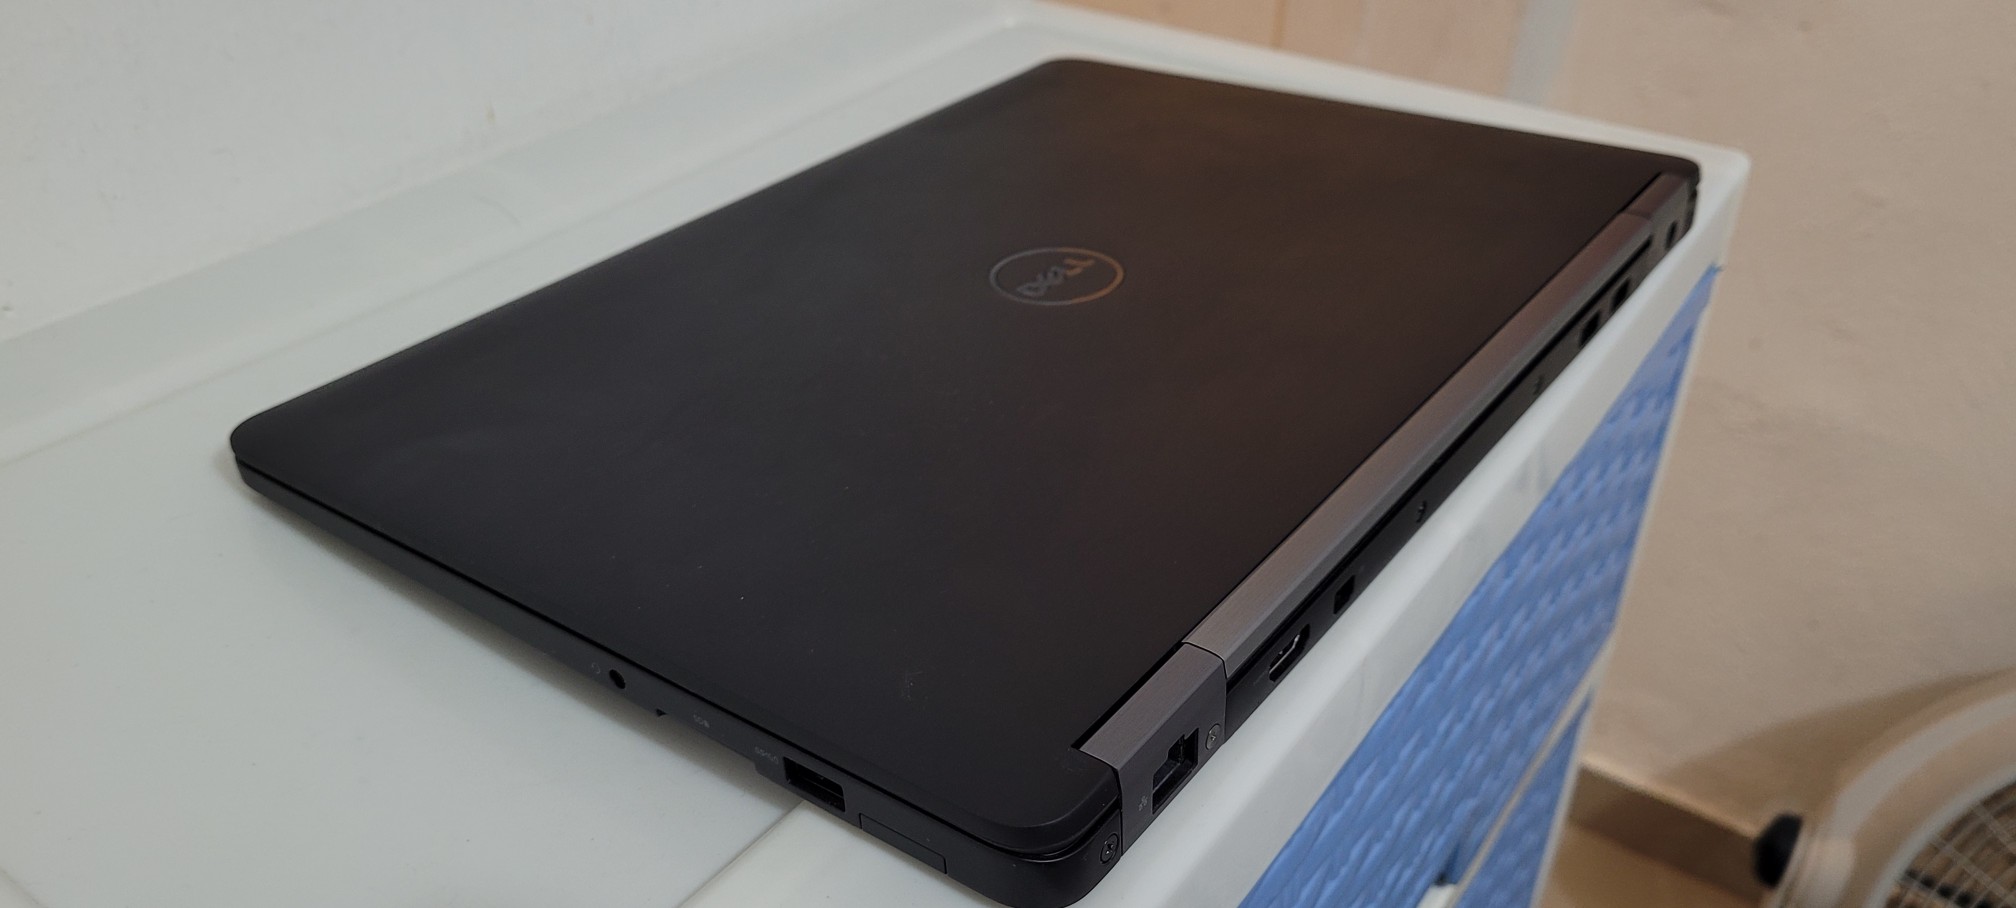 computadoras y laptops - Dell 5470 14 Pulg Core i7 6ta Ram 8gb ddr4 Disco 256gb SSD full 2